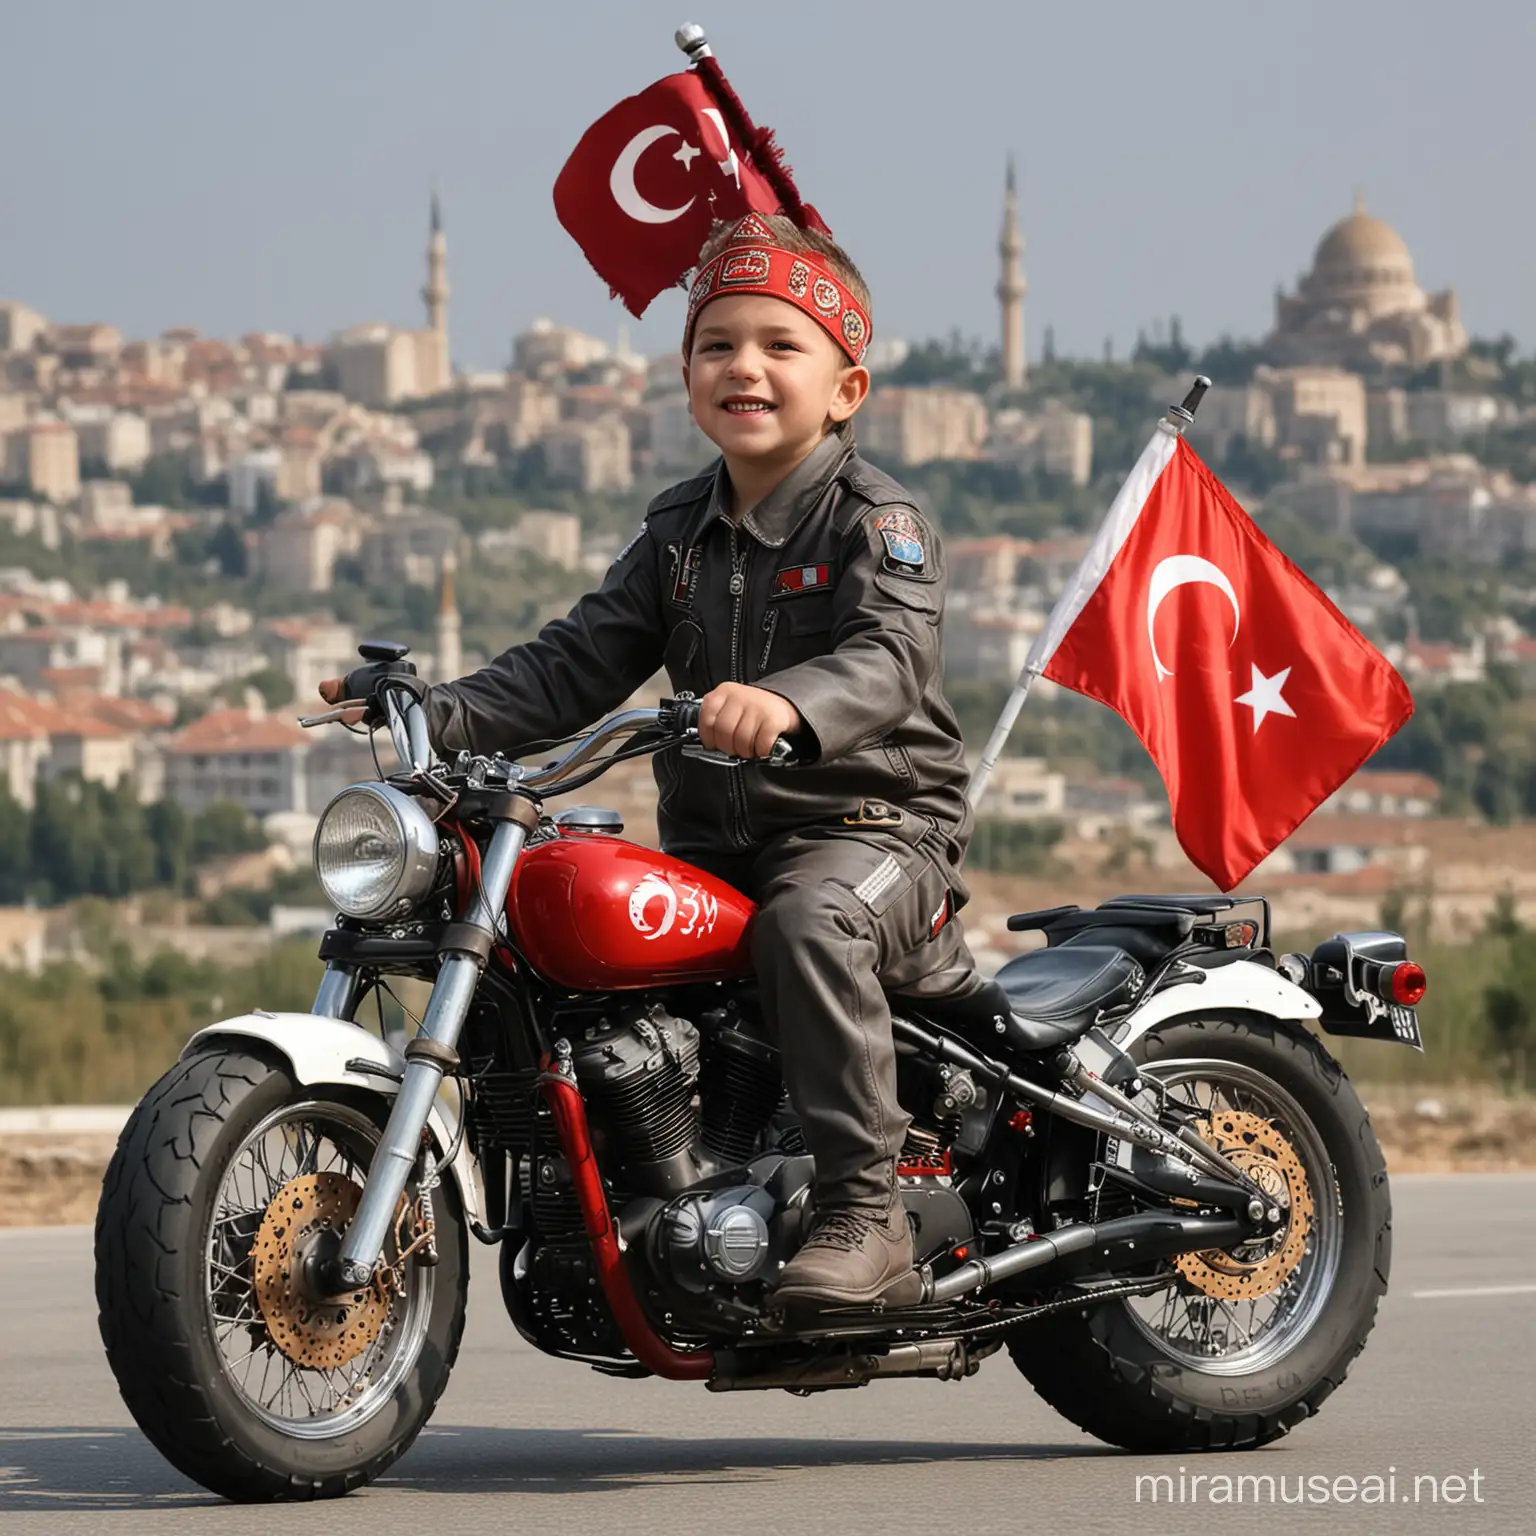 23 nisan Ulusal egemenlik ve çocuk bayramı. Motorcycle turkey